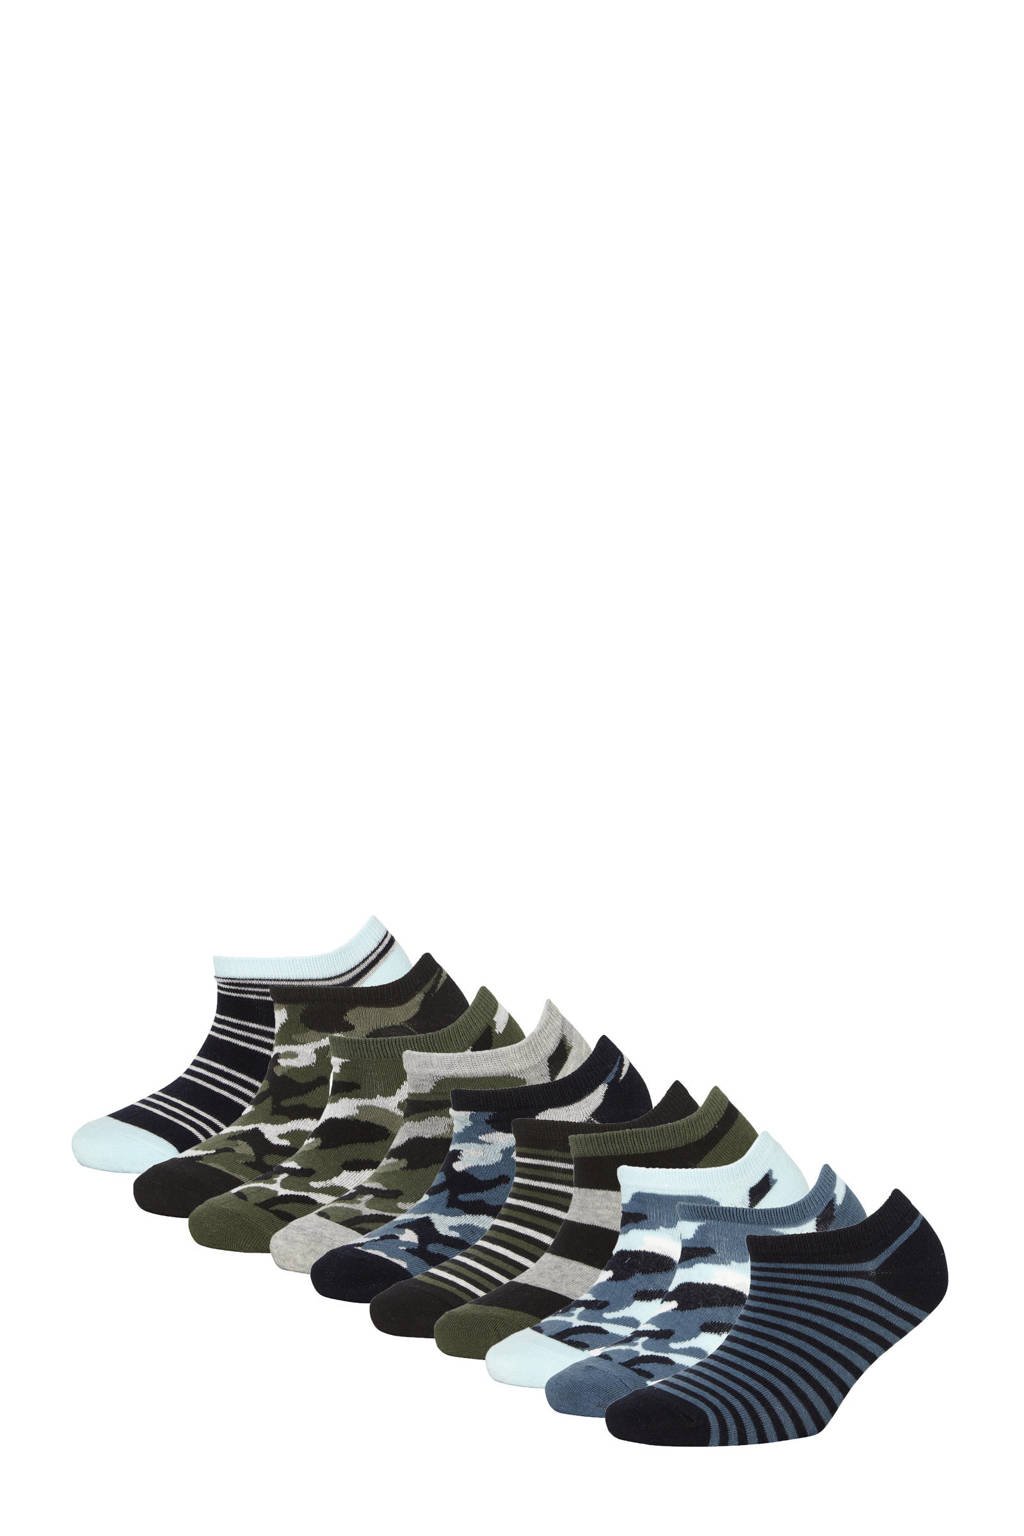 Apollo sneakersokken - set van 10 blauw/grijs, Blauw/grijs